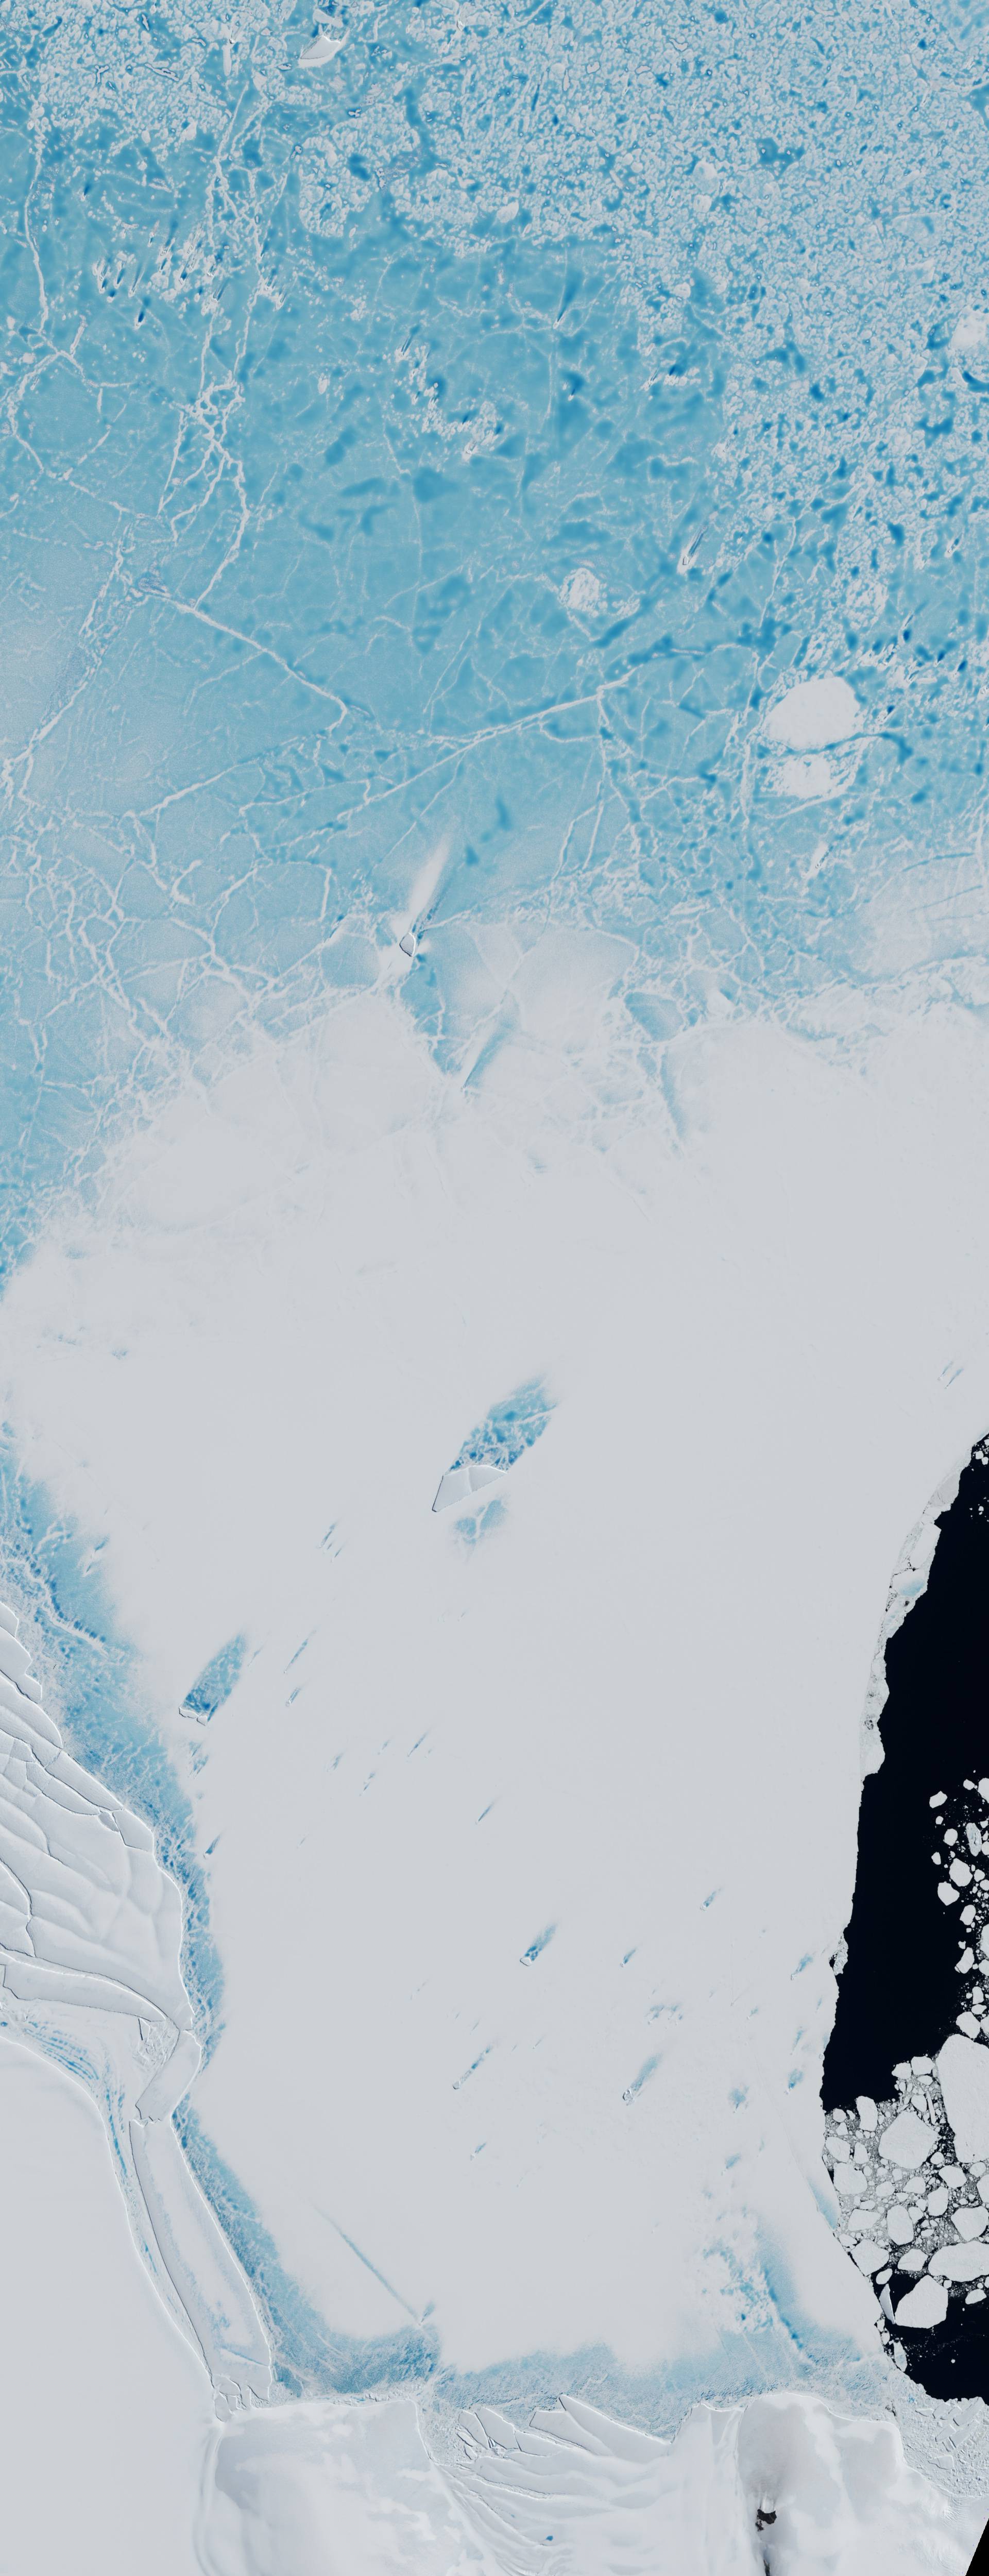 Antarktika je pred pucanjem: Pukotina u ledu sve brže se širi